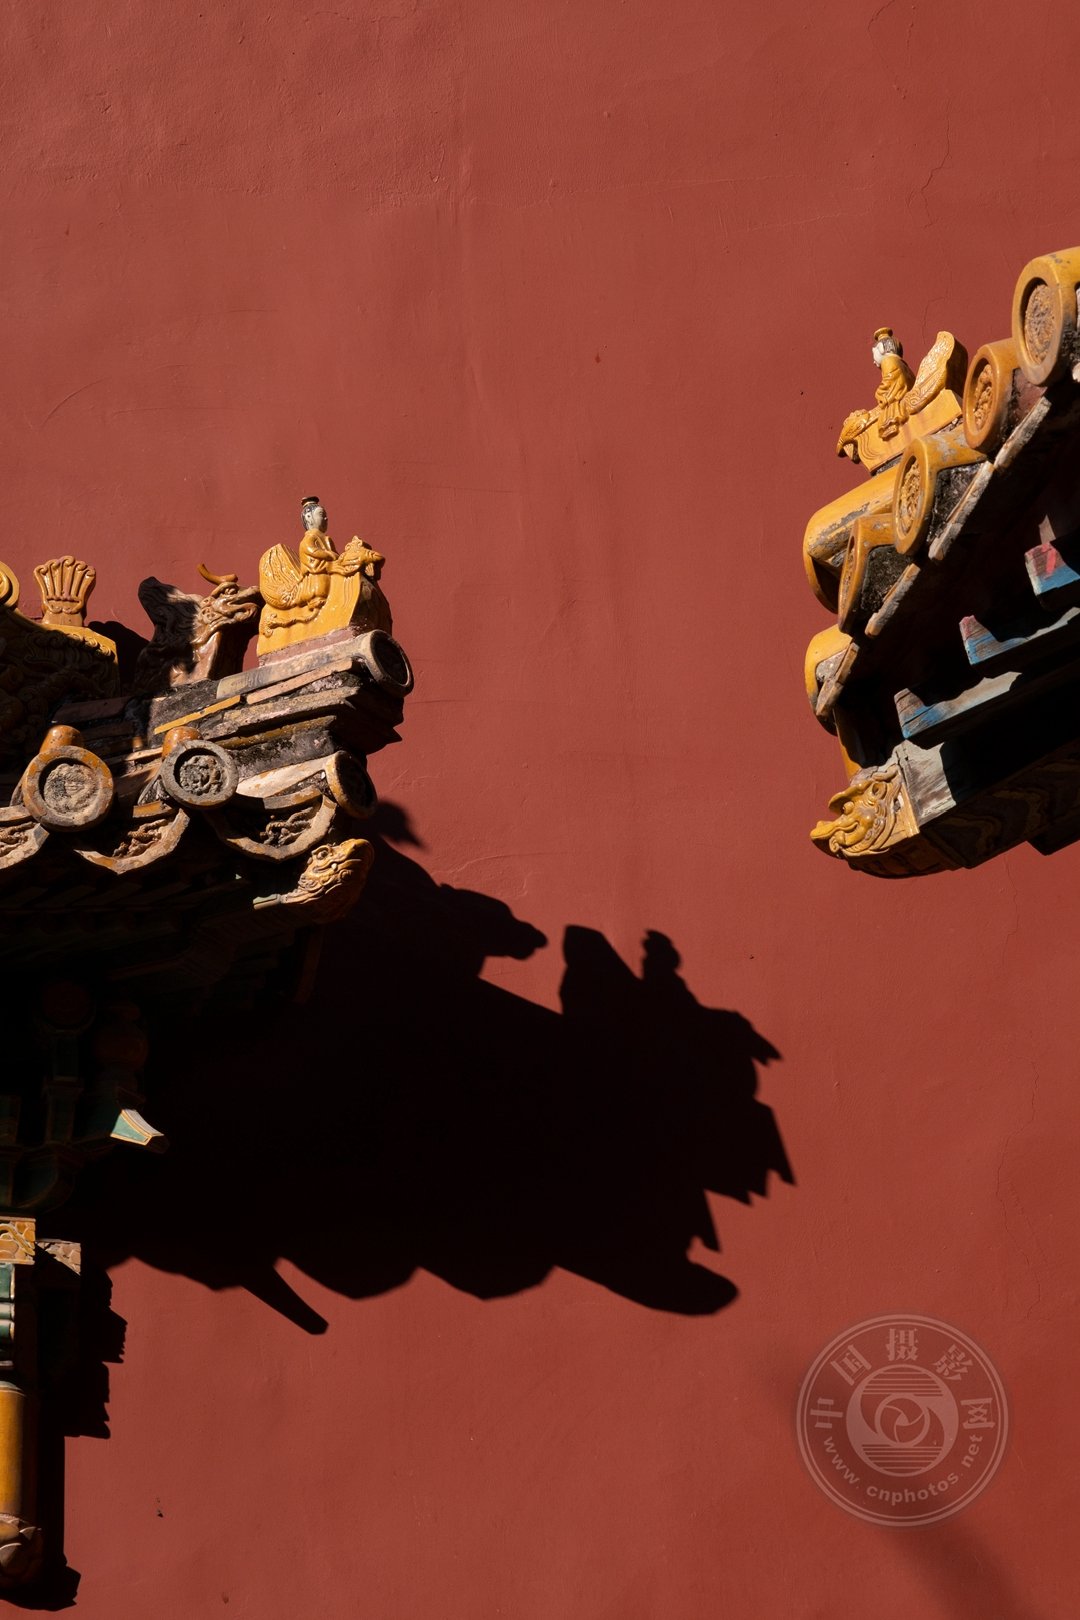 中国摄影网签约摄影师崔琪：在光影之中，感受故宫之美 第 28 张